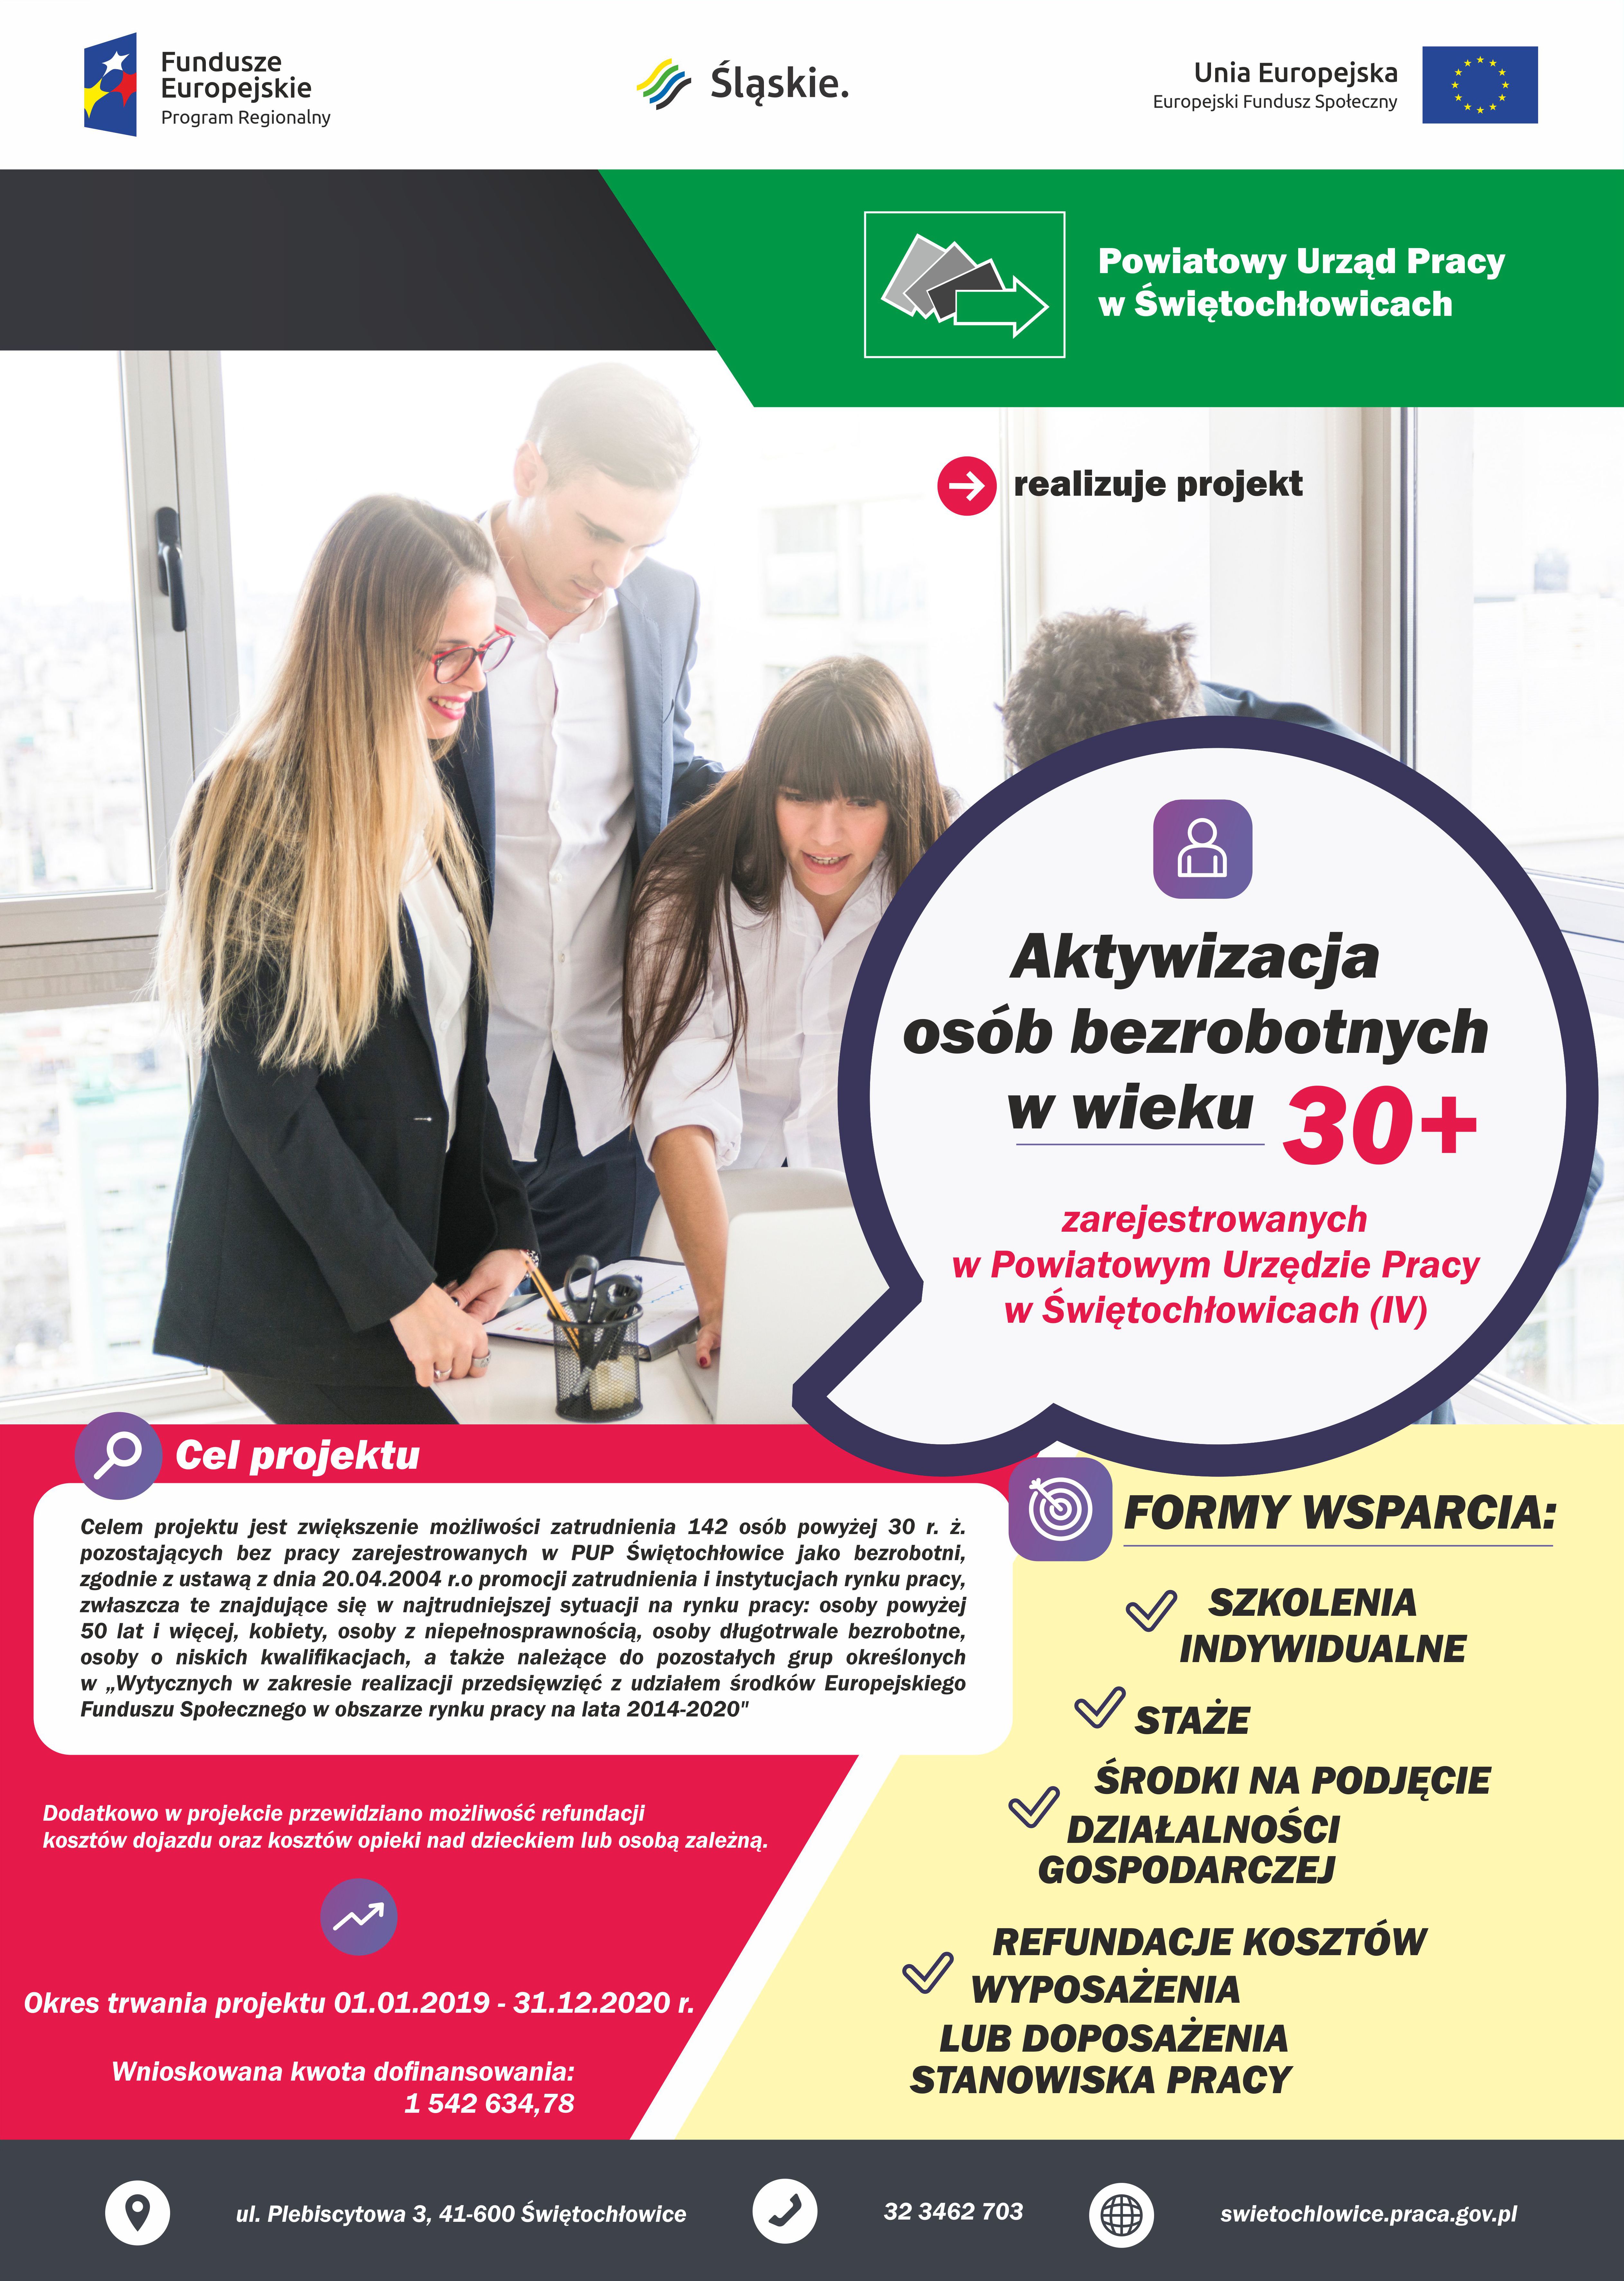 Obrazek dla: Projekt „Aktywizacja osób bezrobotnych w wieku 30+ zarejestrowanych w Powiatowym Urzędzie Pracy w Świętochłowicach (IV)